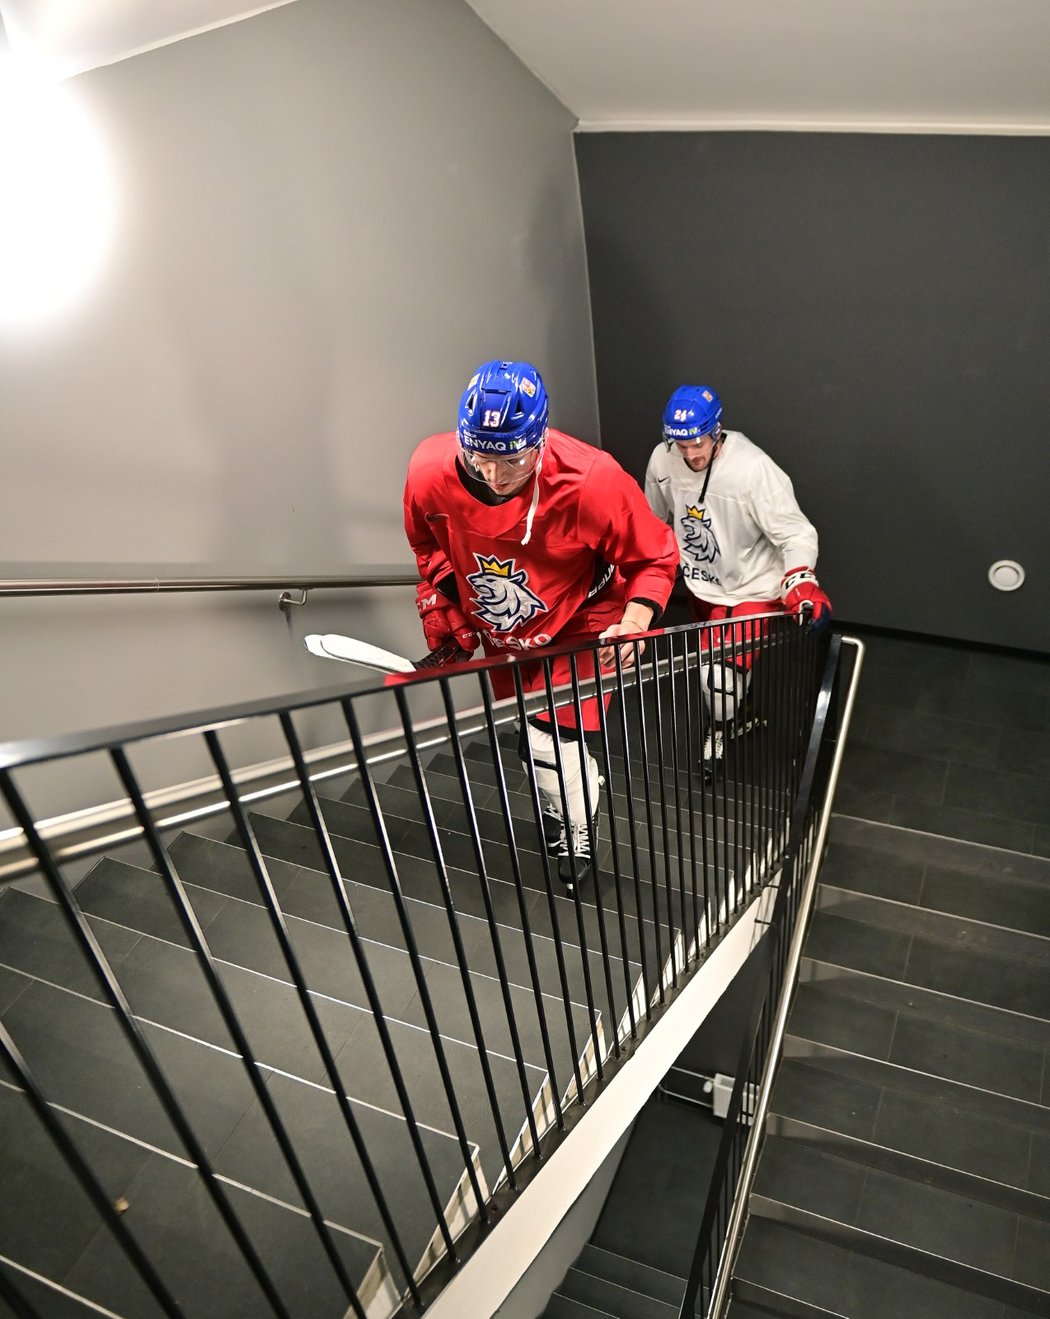 Čeští hokejisté, kteří se nevešli do výtahu, odcházeli z tréninku po schodech